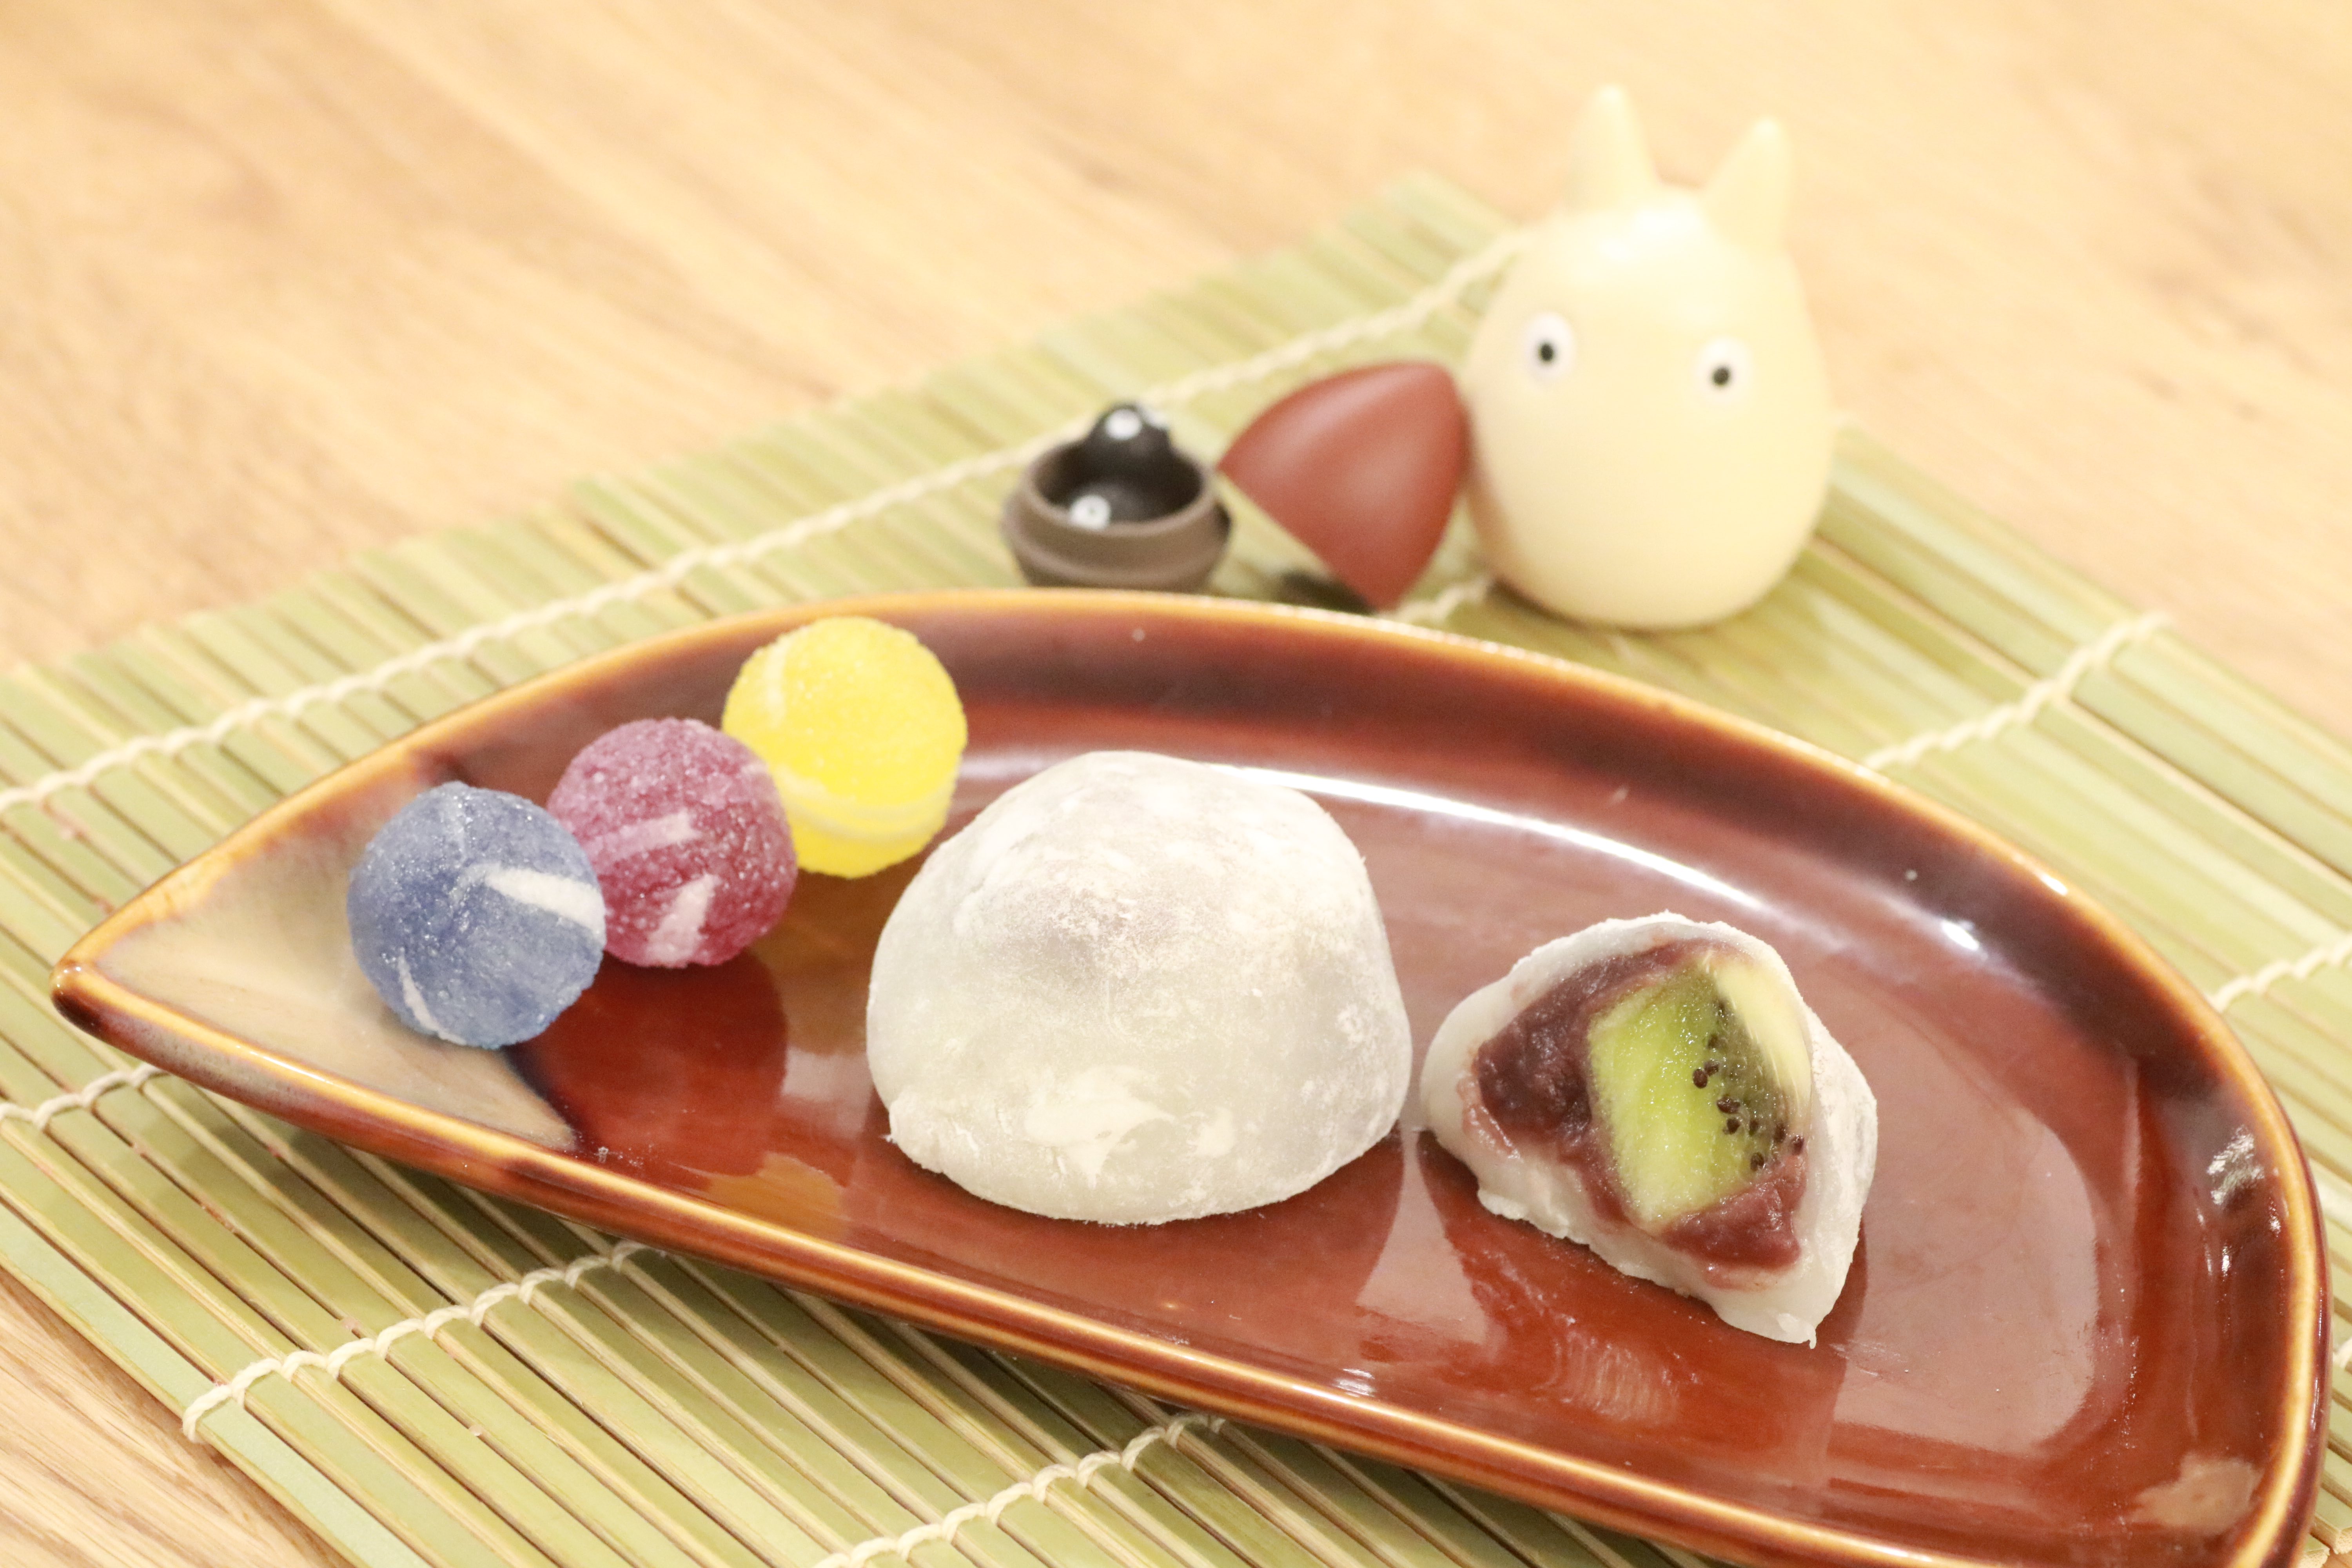 日本のお菓子 フルーツ大福のレシピ 料理教室が運営する 作って食べる カタチのレストラン ホームクッキングジャパン Hcj